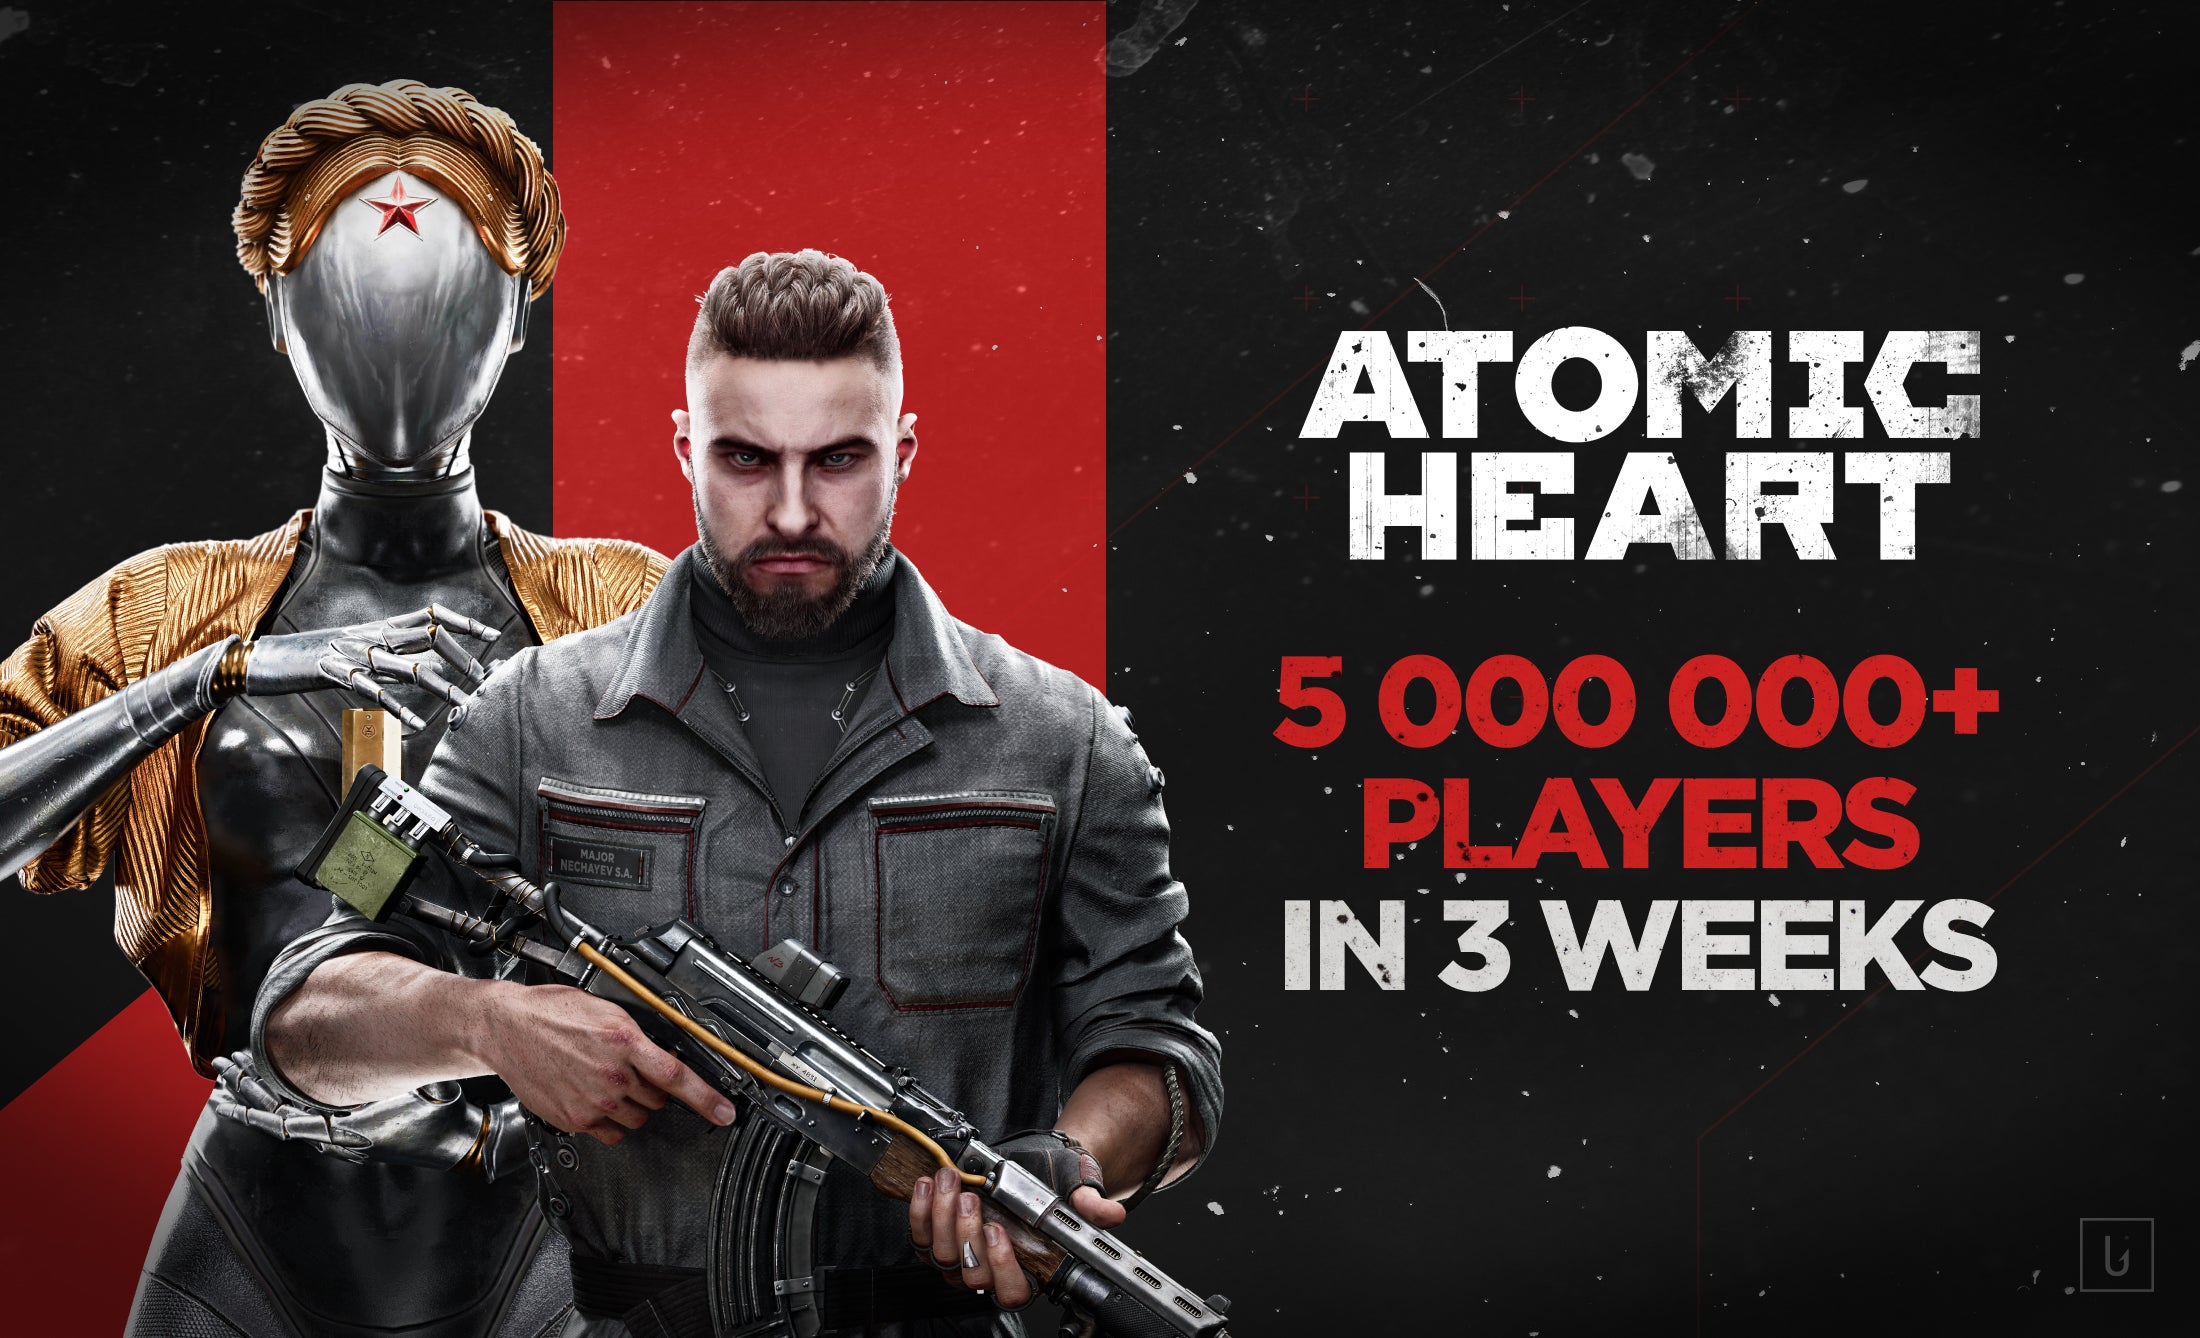 Imagem para Atomic Heart jogado por mais de 5 milhões de jogadores